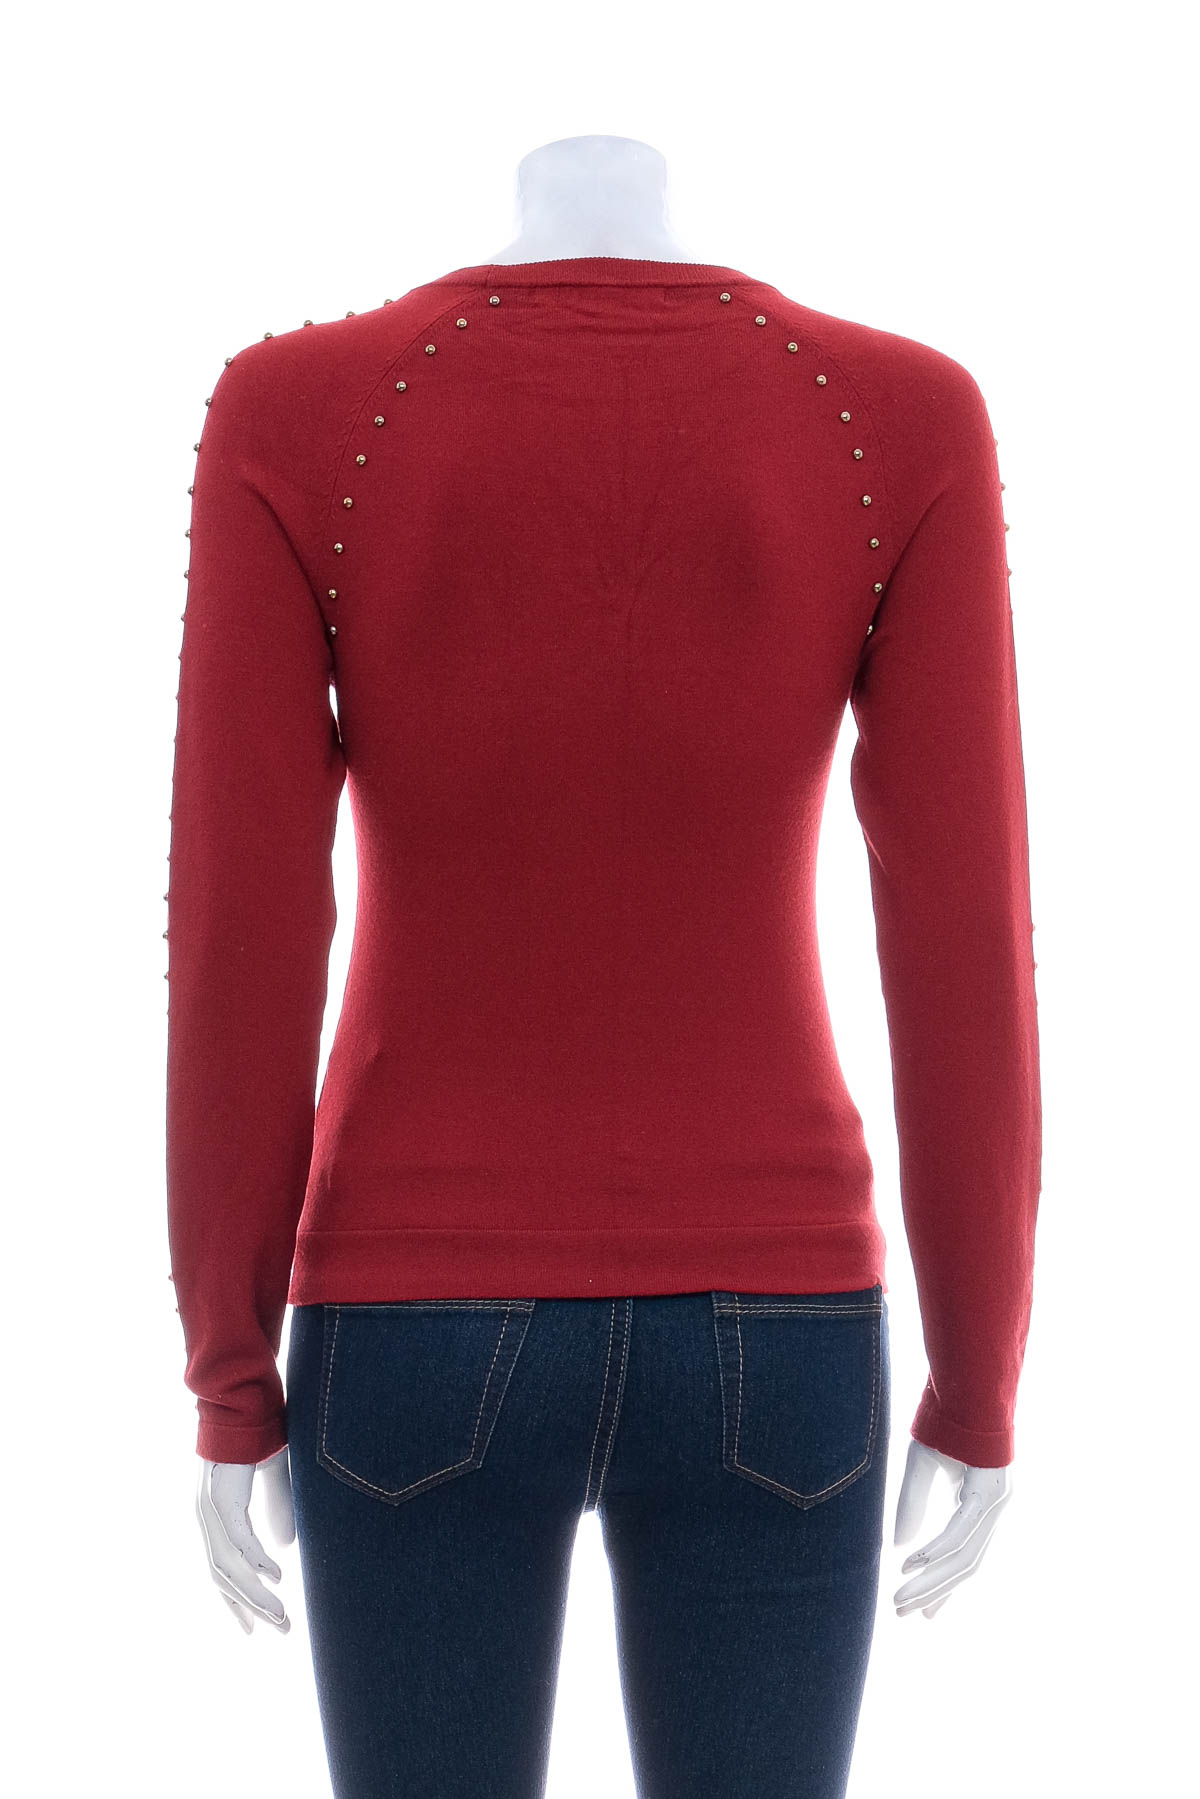 Women's sweater - Karen Millen - 1